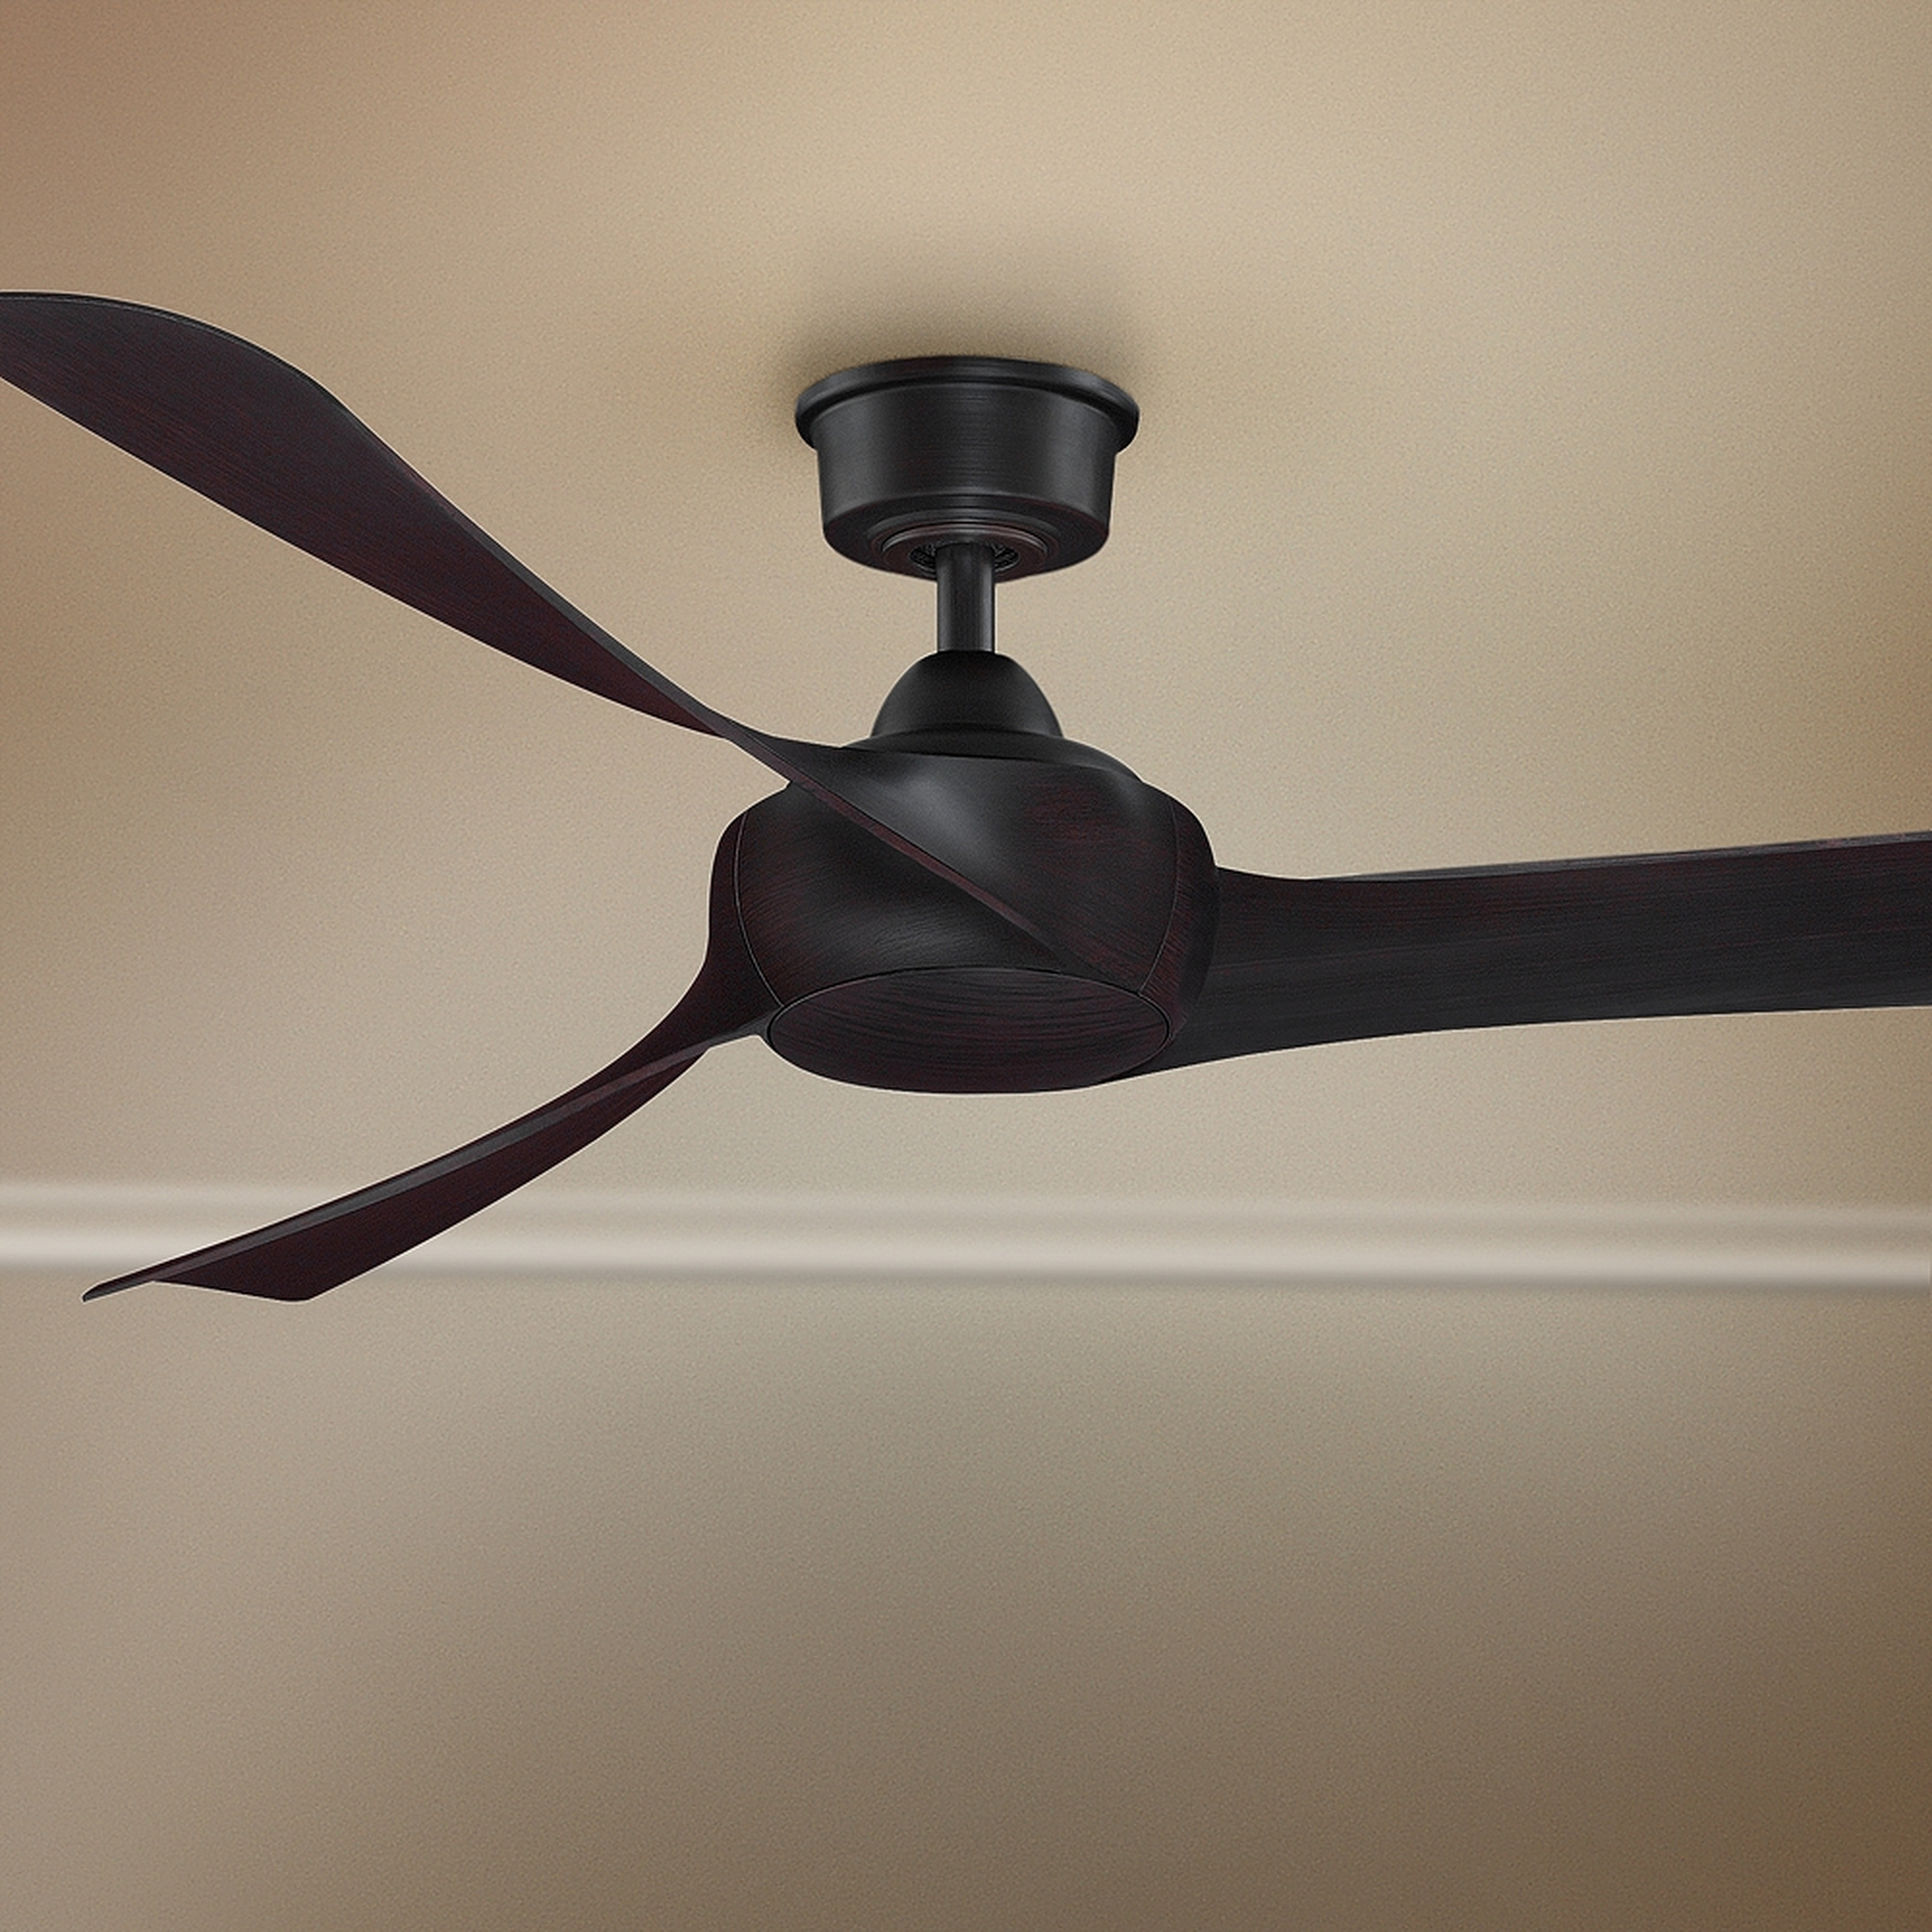 60" Fanimation Wrap Dark Bronze Damp Ceiling Fan - Style # 79V70 - Lamps Plus